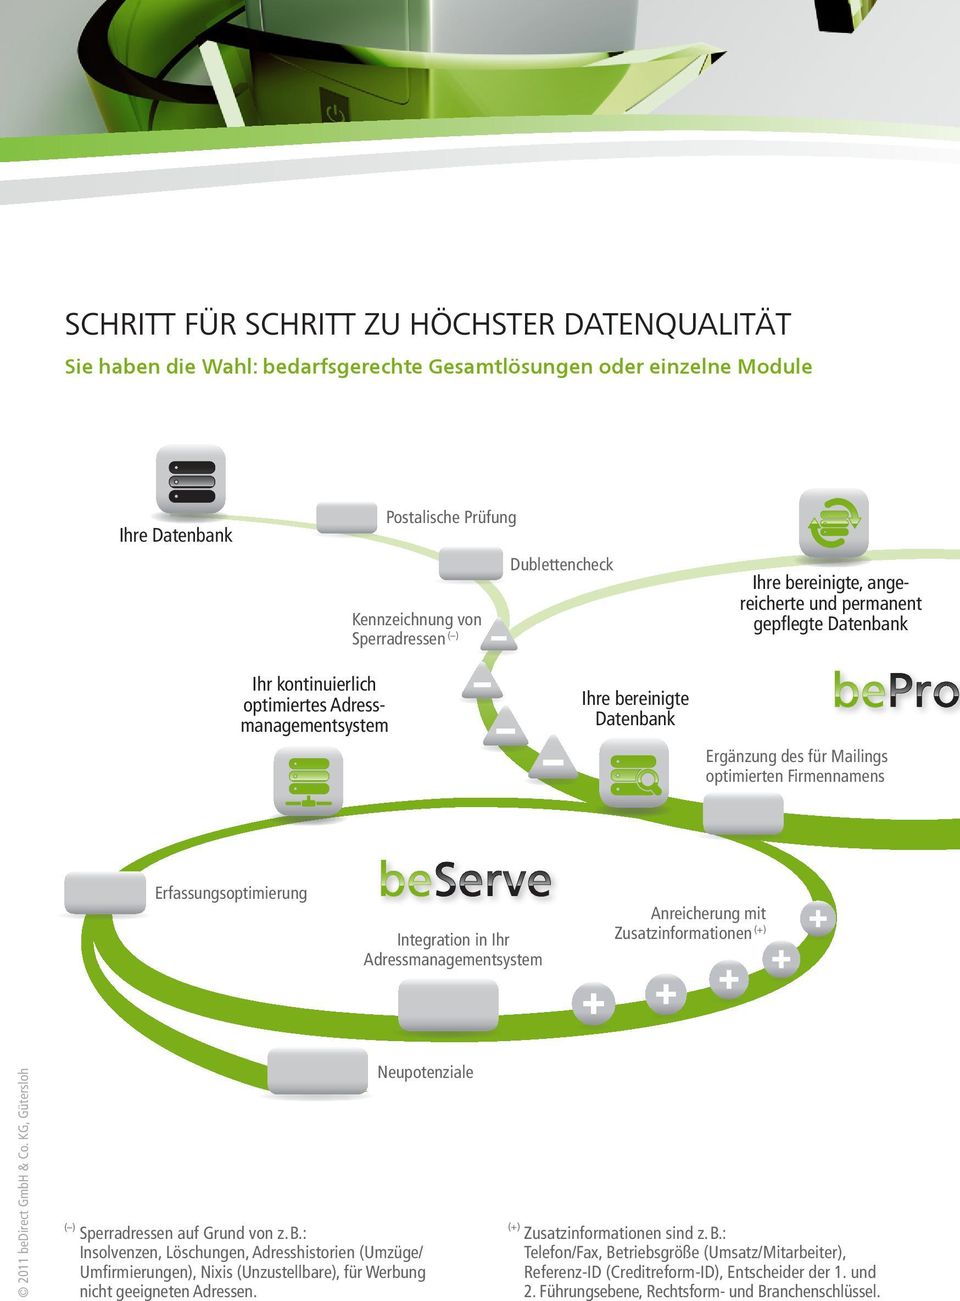 Firmennamens Erfassungsoptimierung Integration in Ihr Adressmanagementsystem Anreicherung mit Zusatzinformationen (+) 2011 bedirect GmbH & Co.